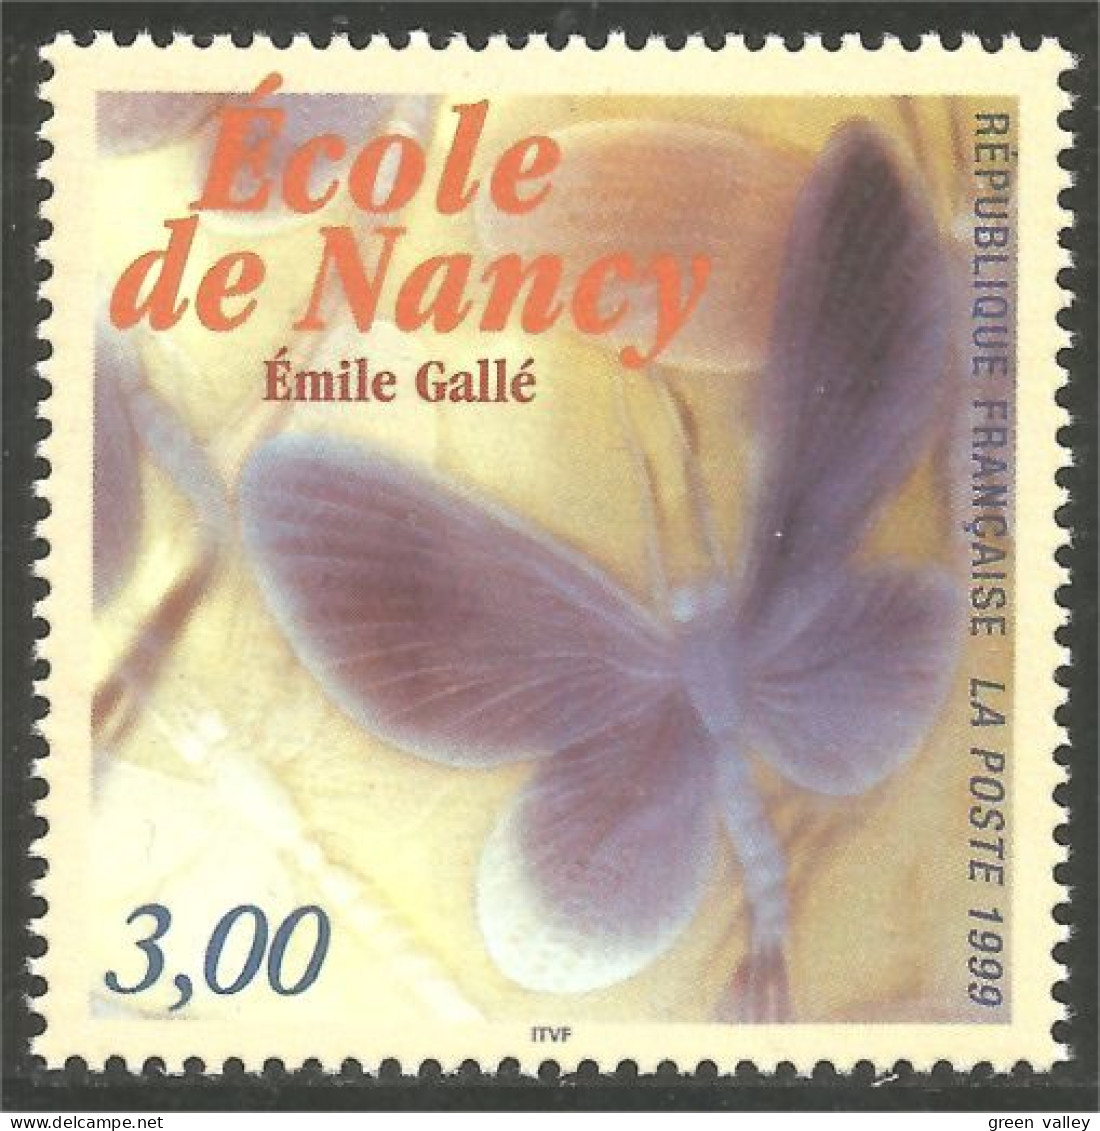 362 France Yv 3246 Papillon Butterfly Gallé Nancy Schmetterling MNH ** Neuf SC (3246-1a) - Glas & Brandglas